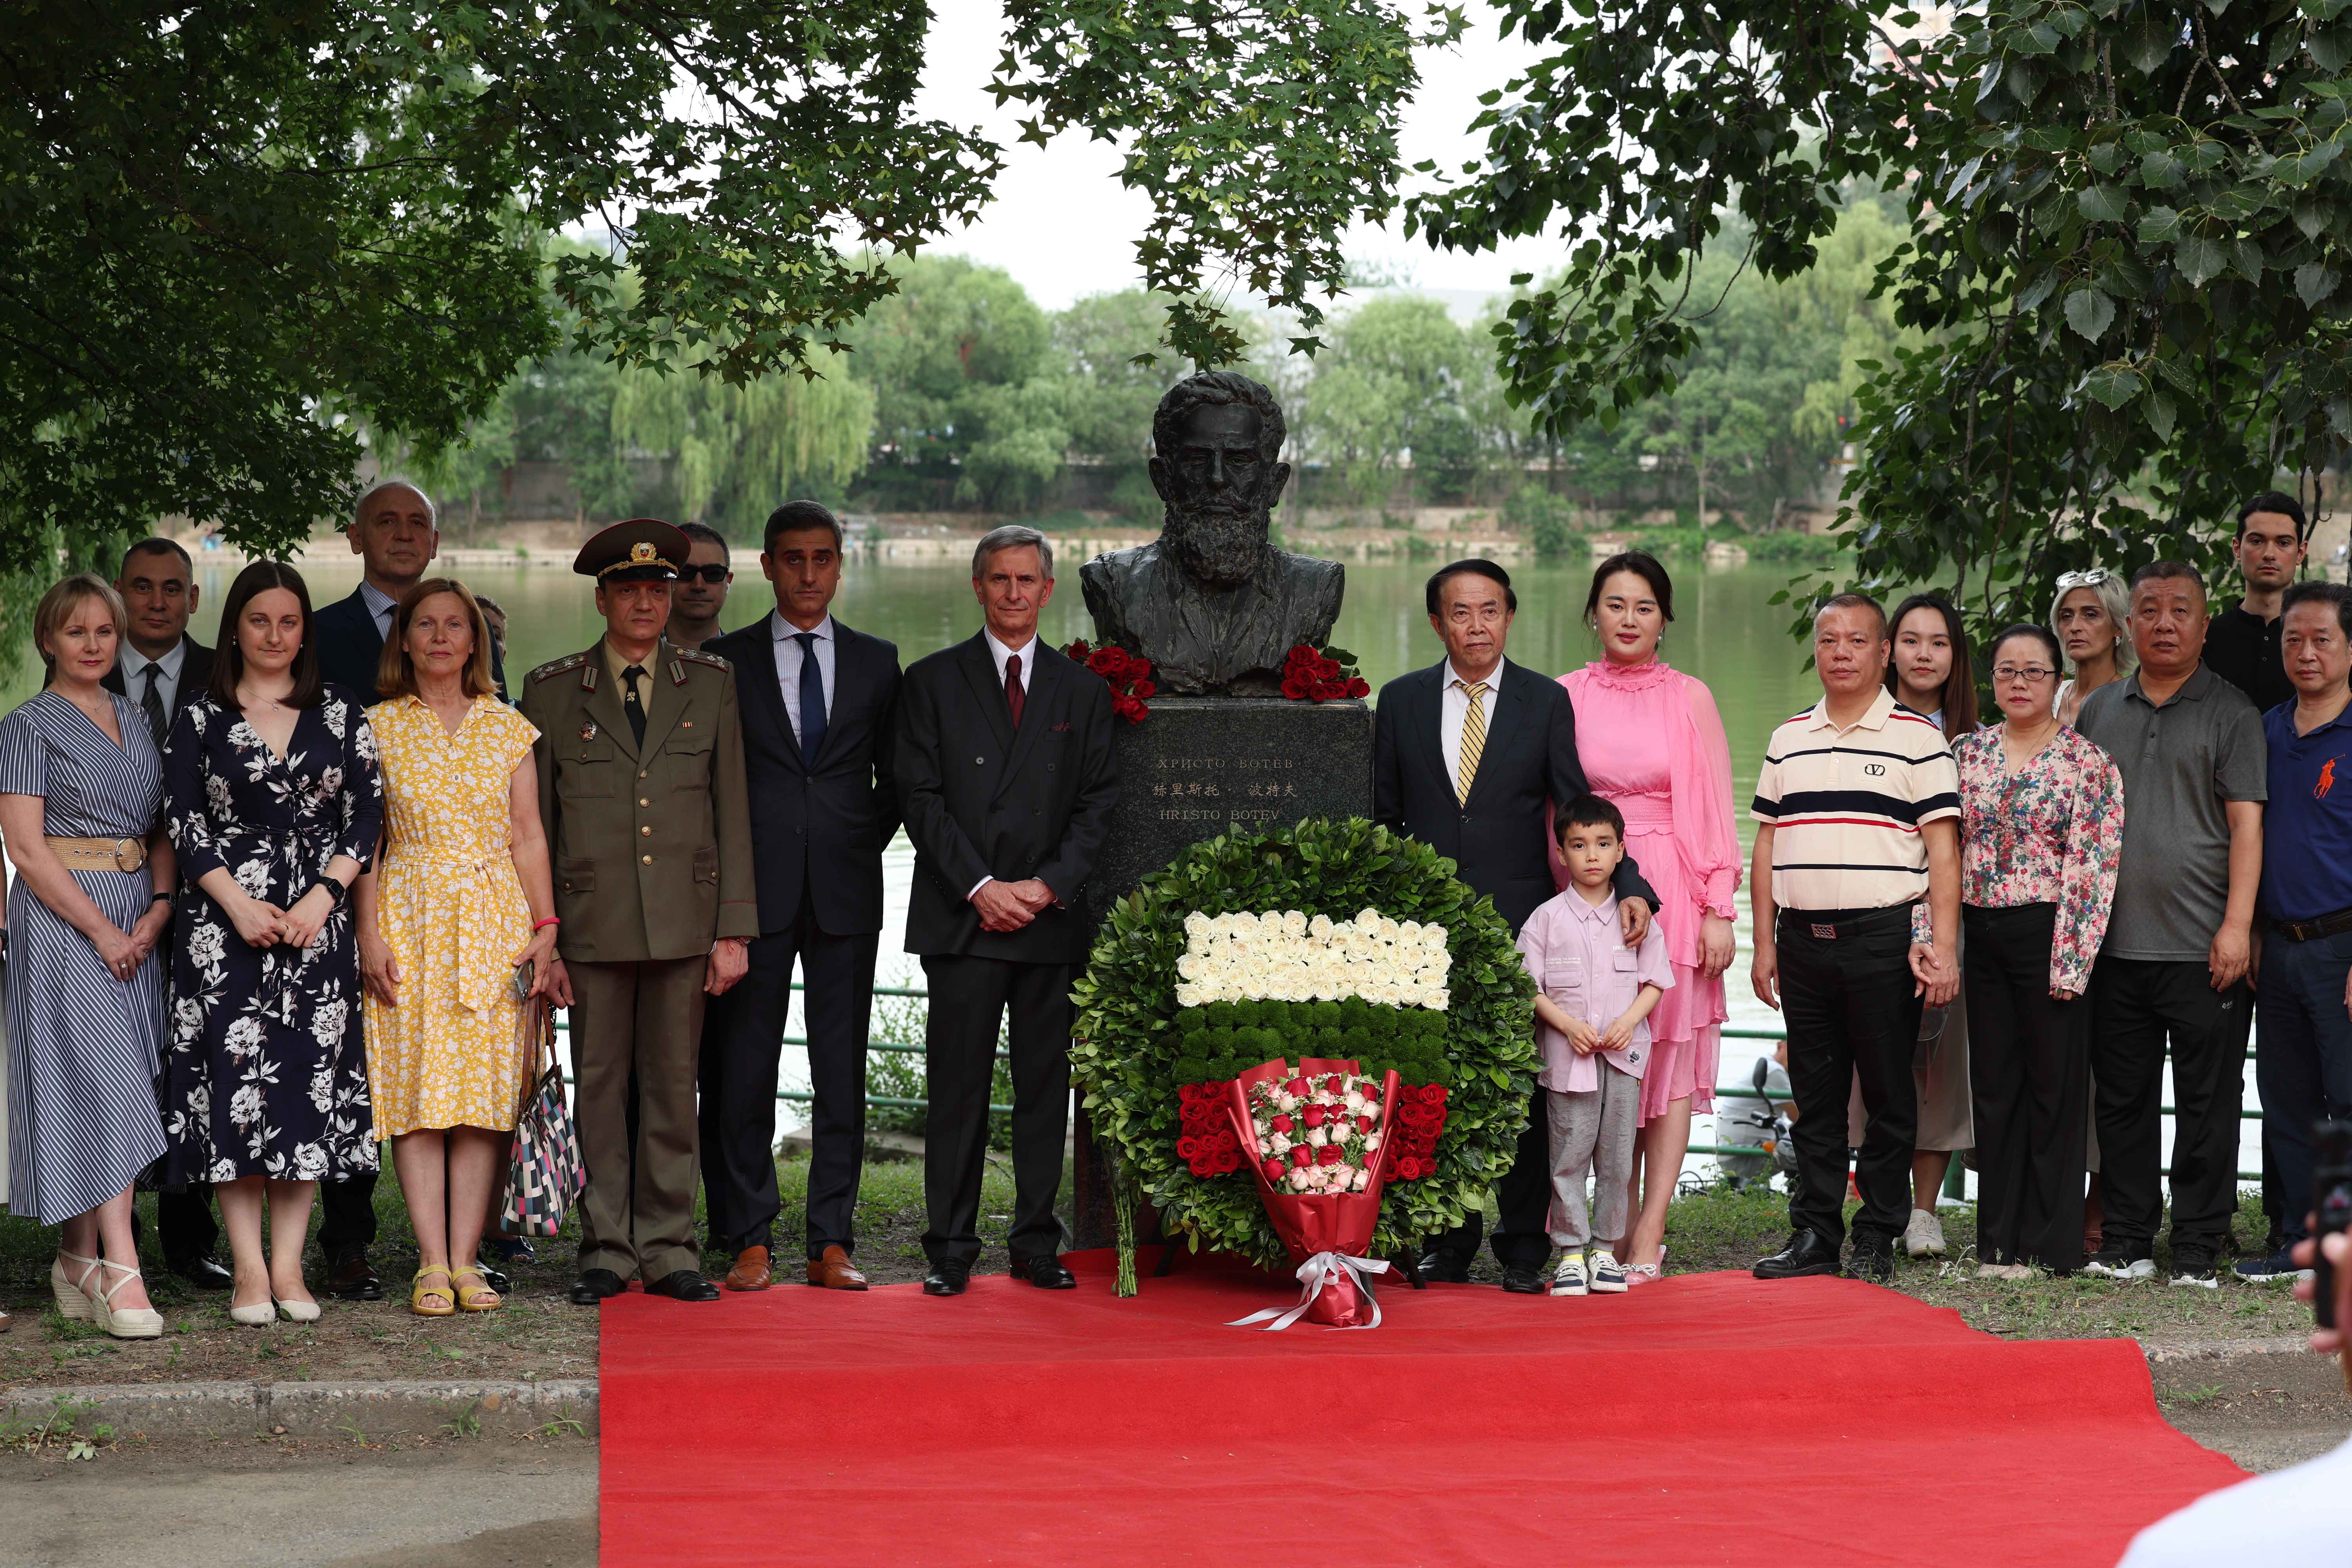 Commemoration of June 2nd in Beijing